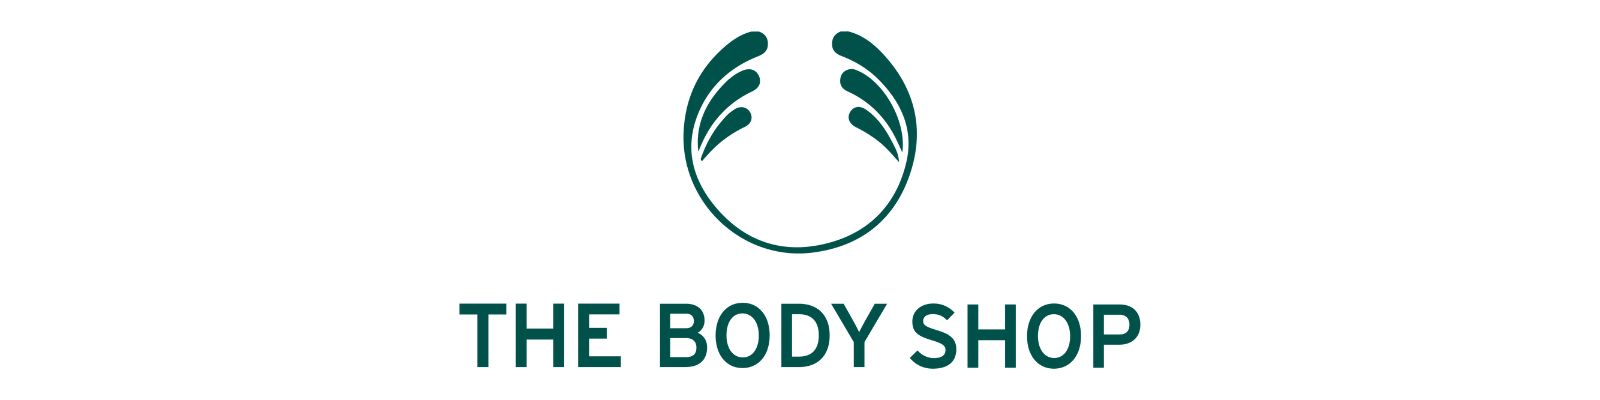 The Body Shop é confiável? Conheça todos os detalhes!